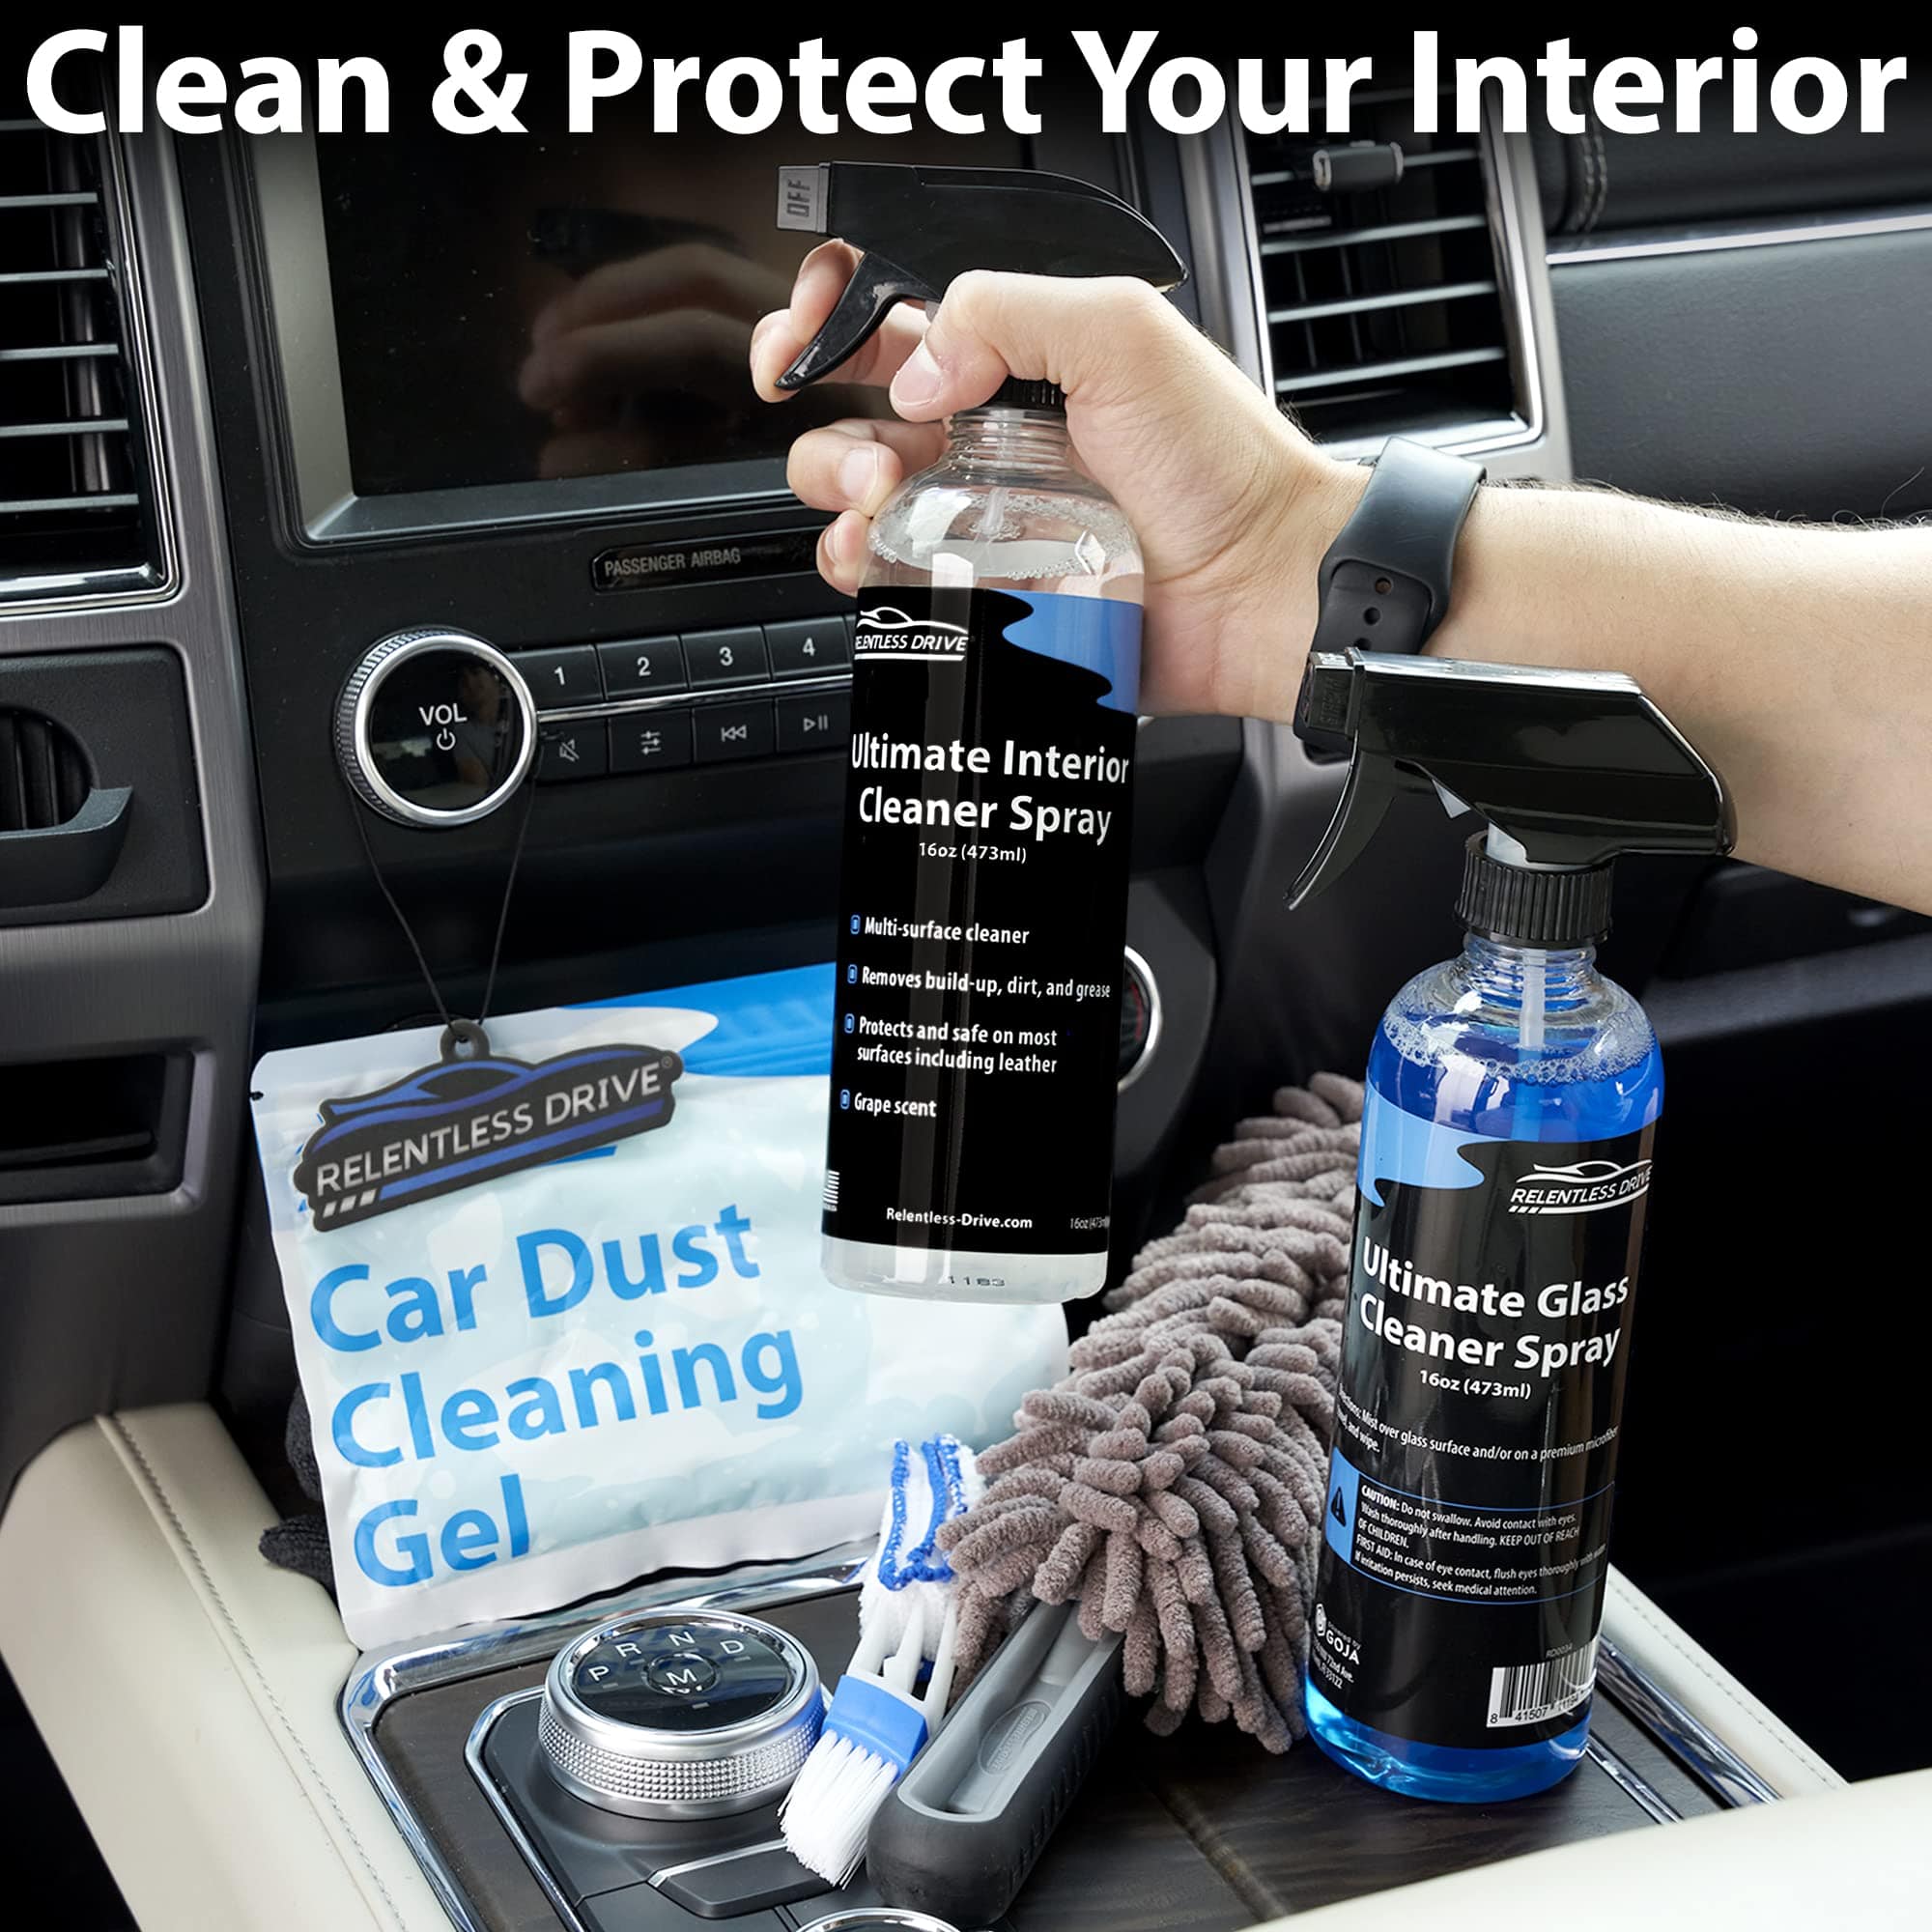 Relentless Drive Car Detailing Kit - Car Wash Kit, Car Cleaning Kit, Car  Washing Kit, Car Detailing Supplies, Car Detailing Kit Interior Cleaner,  Car